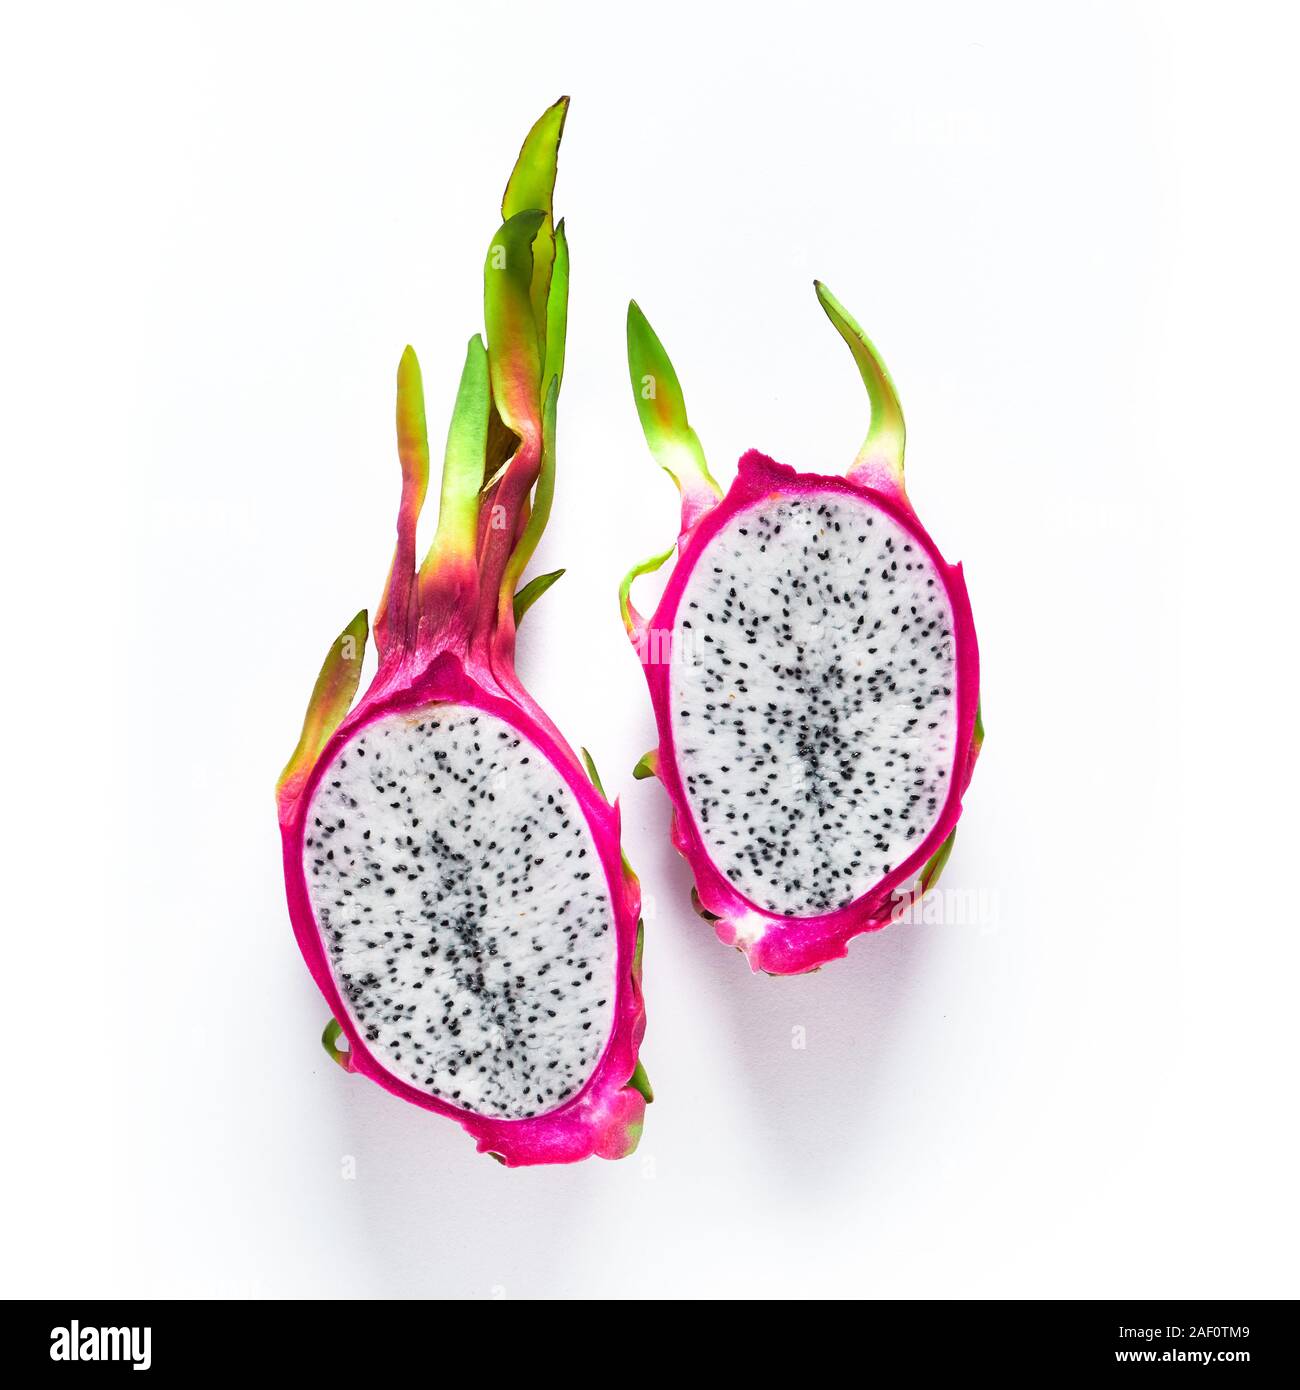 Télévision créative avec des produits bio frais modèle rose, blanc et vert dragonfruit (pitaya ou pitahaya) isolé sur fond blanc. Vue de dessus, à la mode de mise à plat Banque D'Images